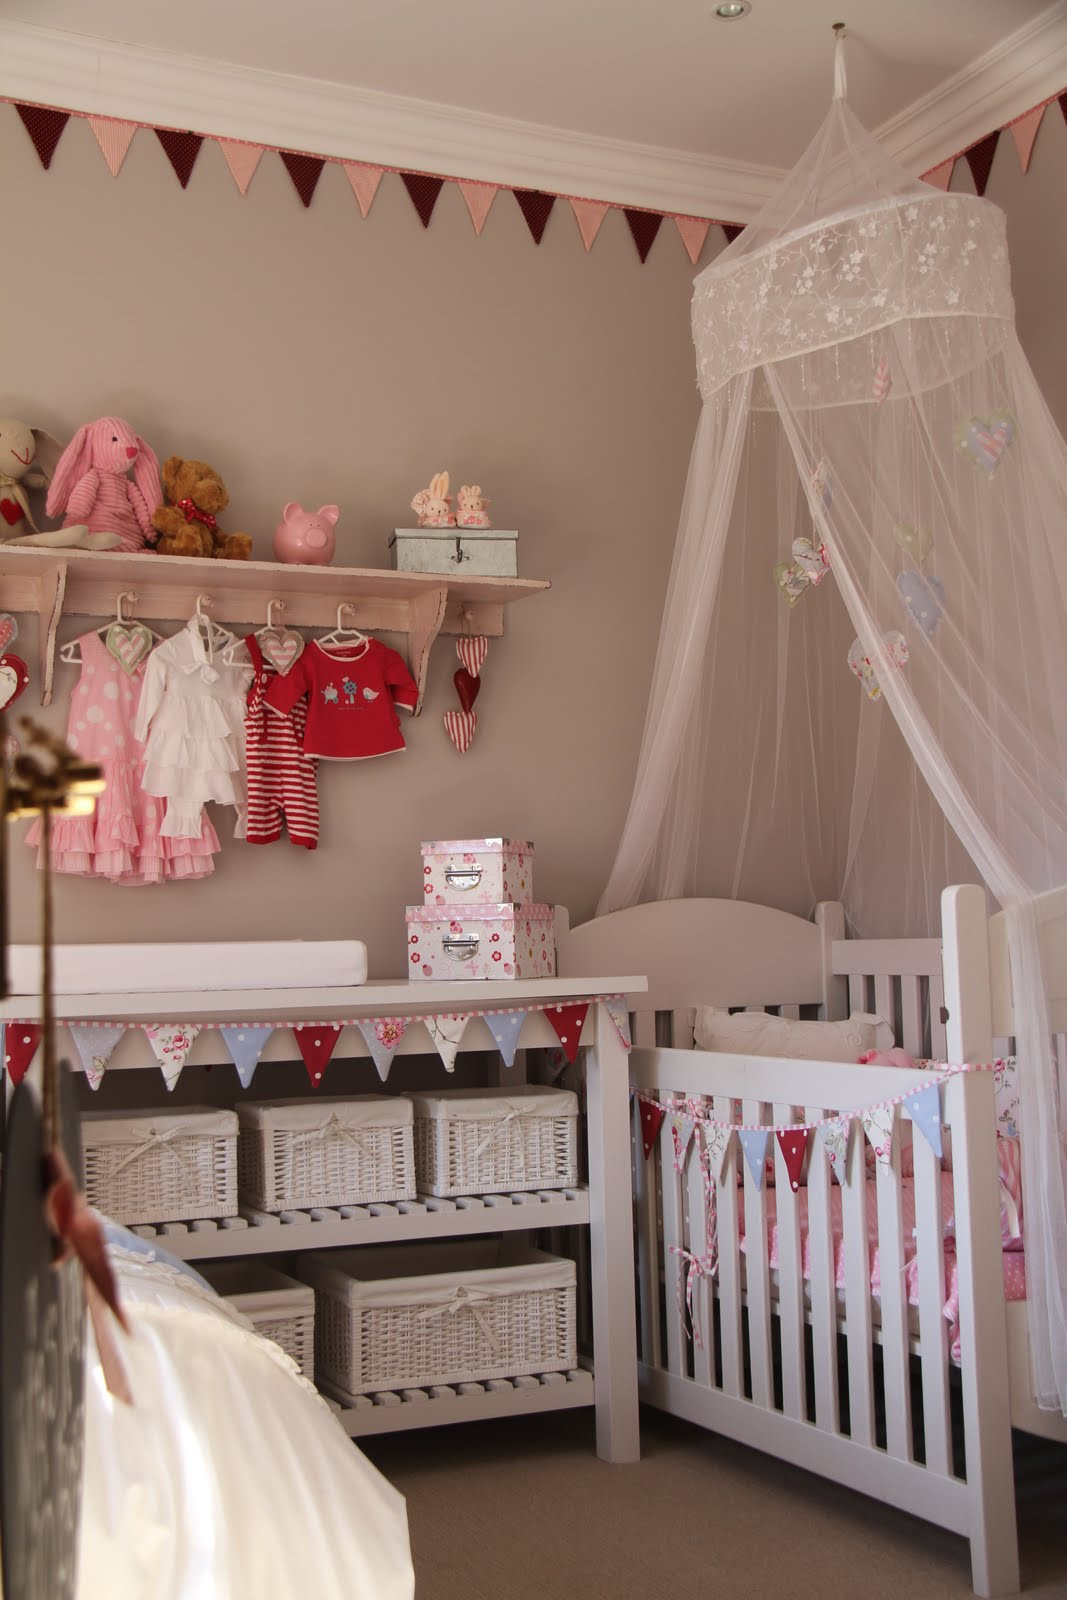 DIY Baby Nursery Projects
 I SPY PRETTY Our Baby Girl Mia s DIY Nursery